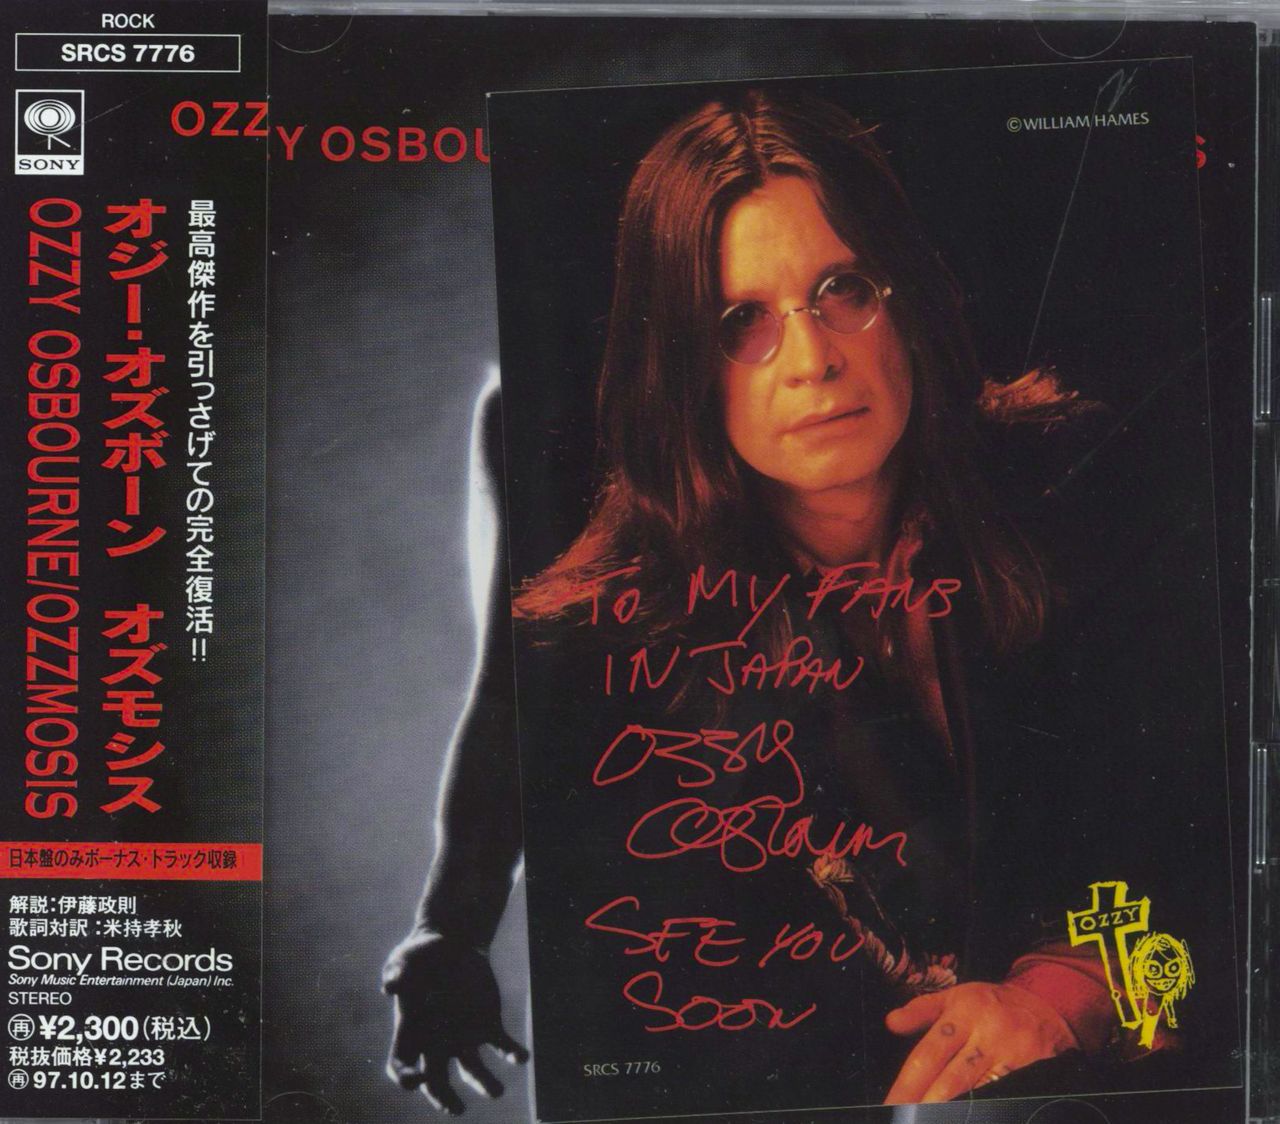 Ozzy Osbourne Ozzmosis Japanese CD album — RareVinyl.com